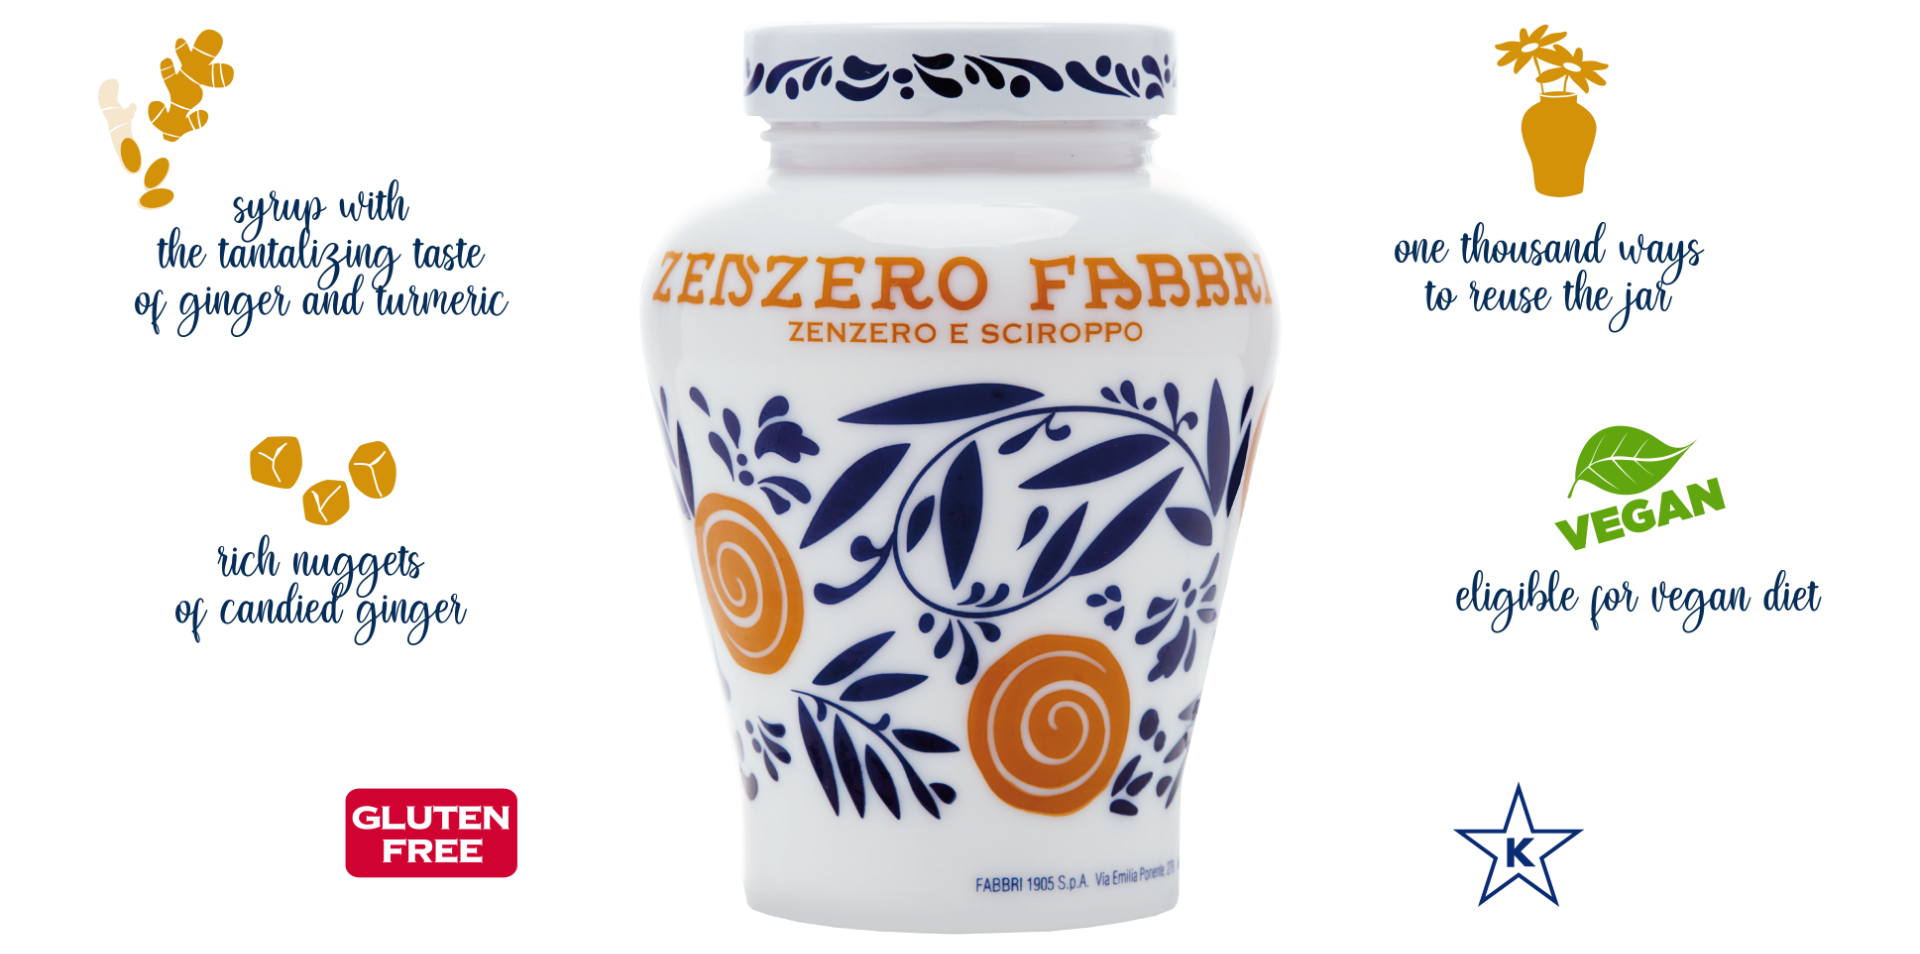 Zenzero Fabbri products